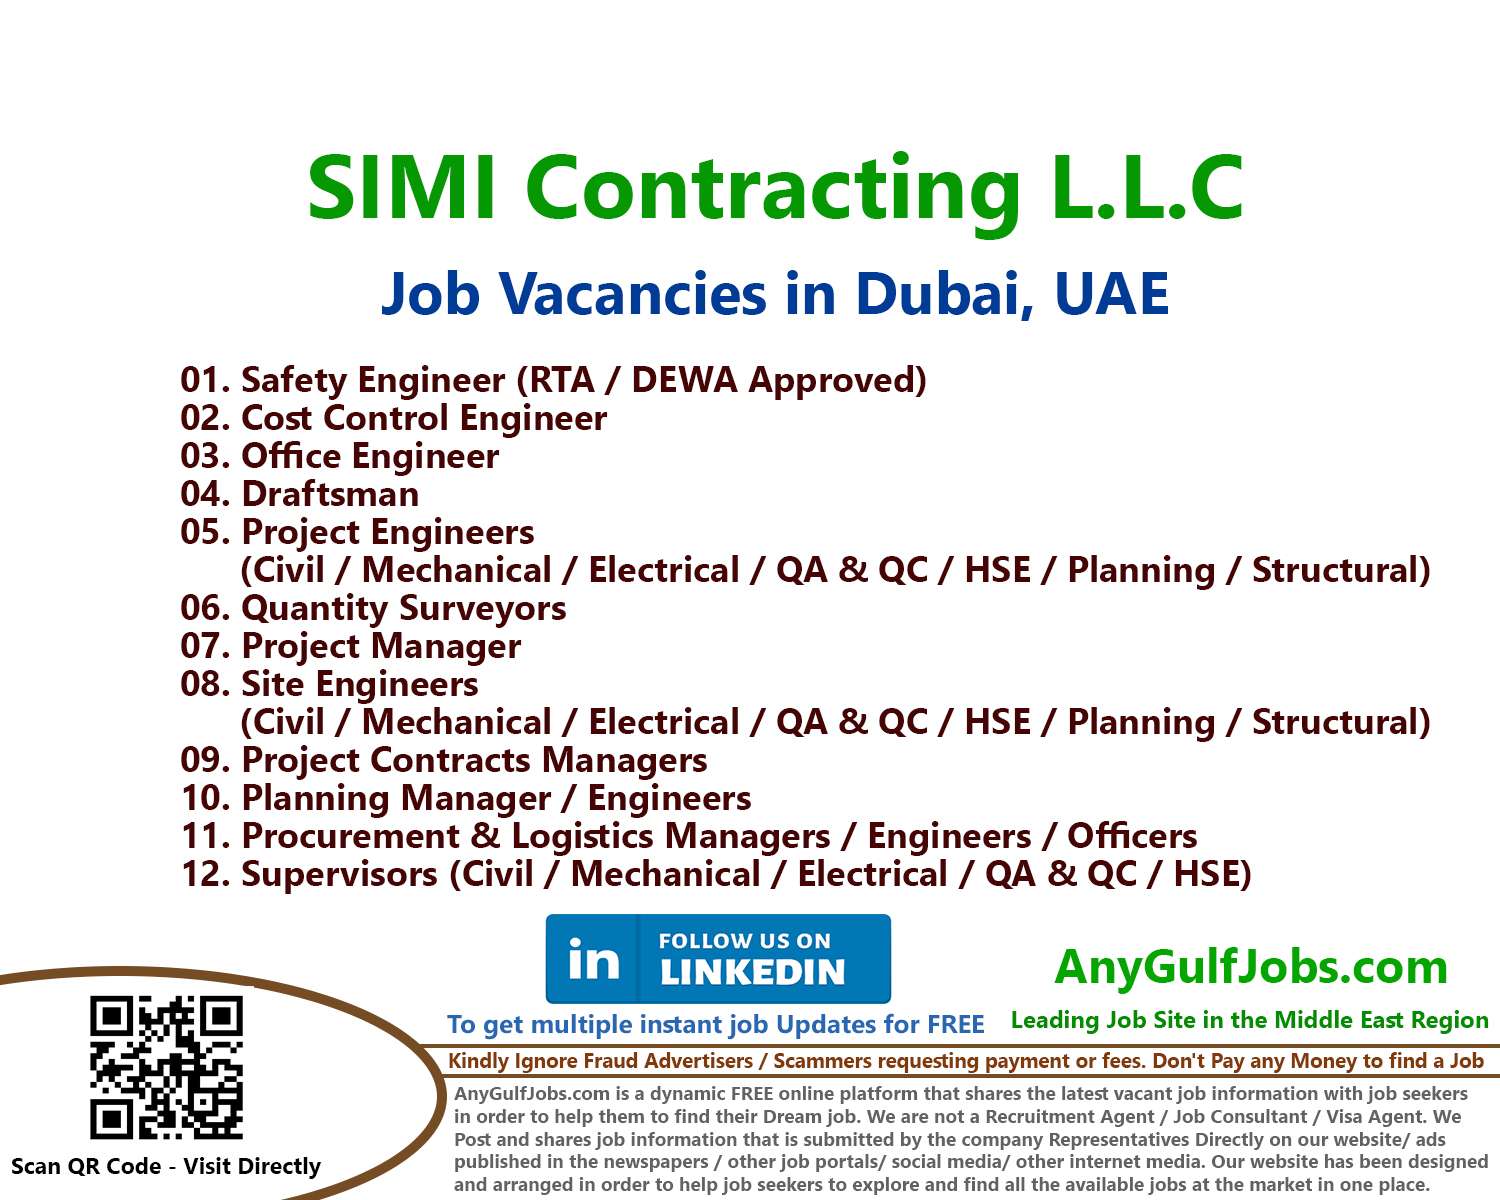 Multiple Job Vacancies - SIMI Contracting L.L.C Job Vacancies in Dubai, UAE